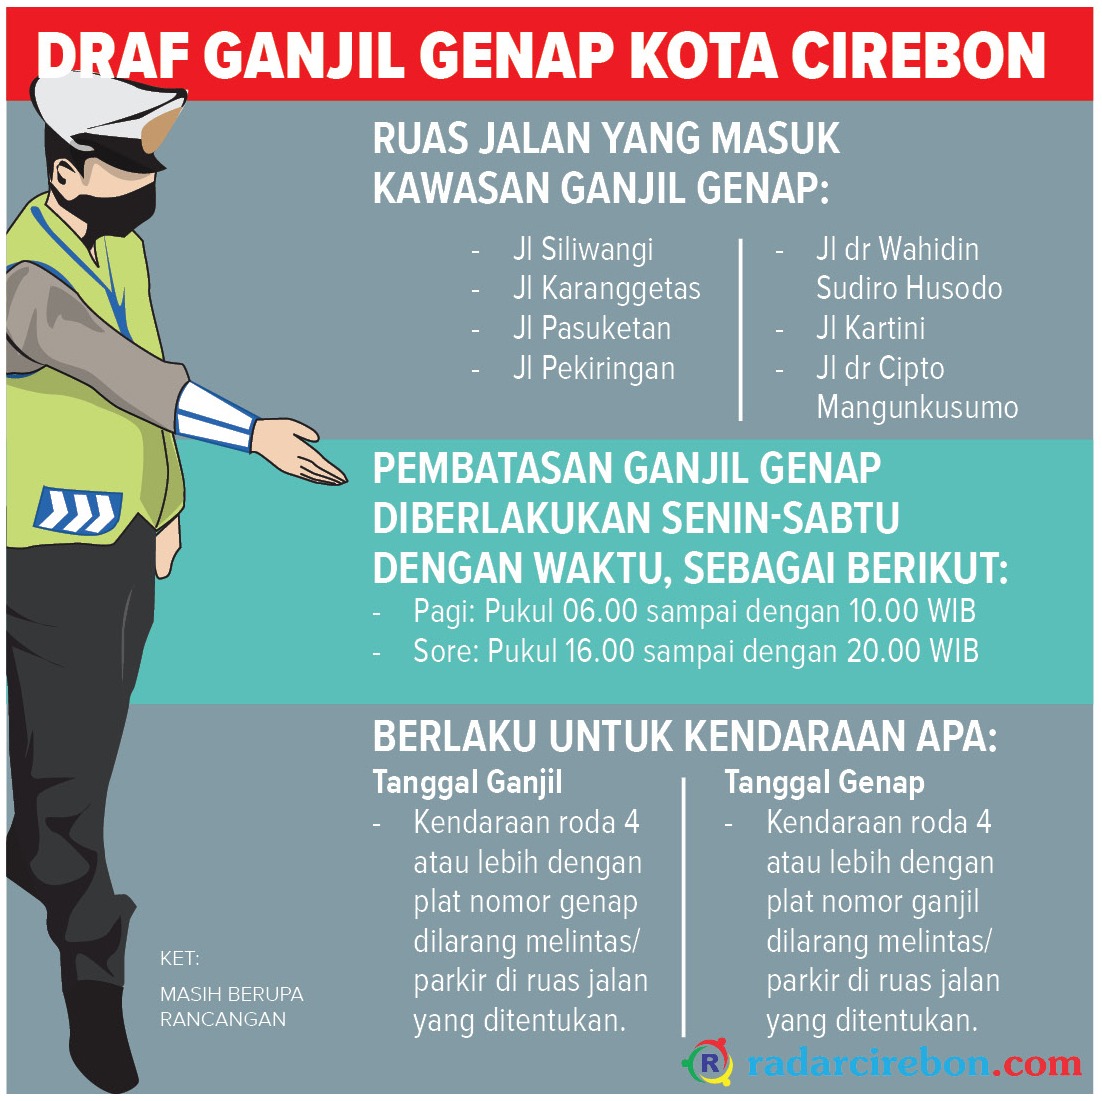 Draf Ganjil Genap Kota Cirebon, Ada 7 Ruas Jalan, Tidak Berlaku untuk Driver Online hingga Angkot